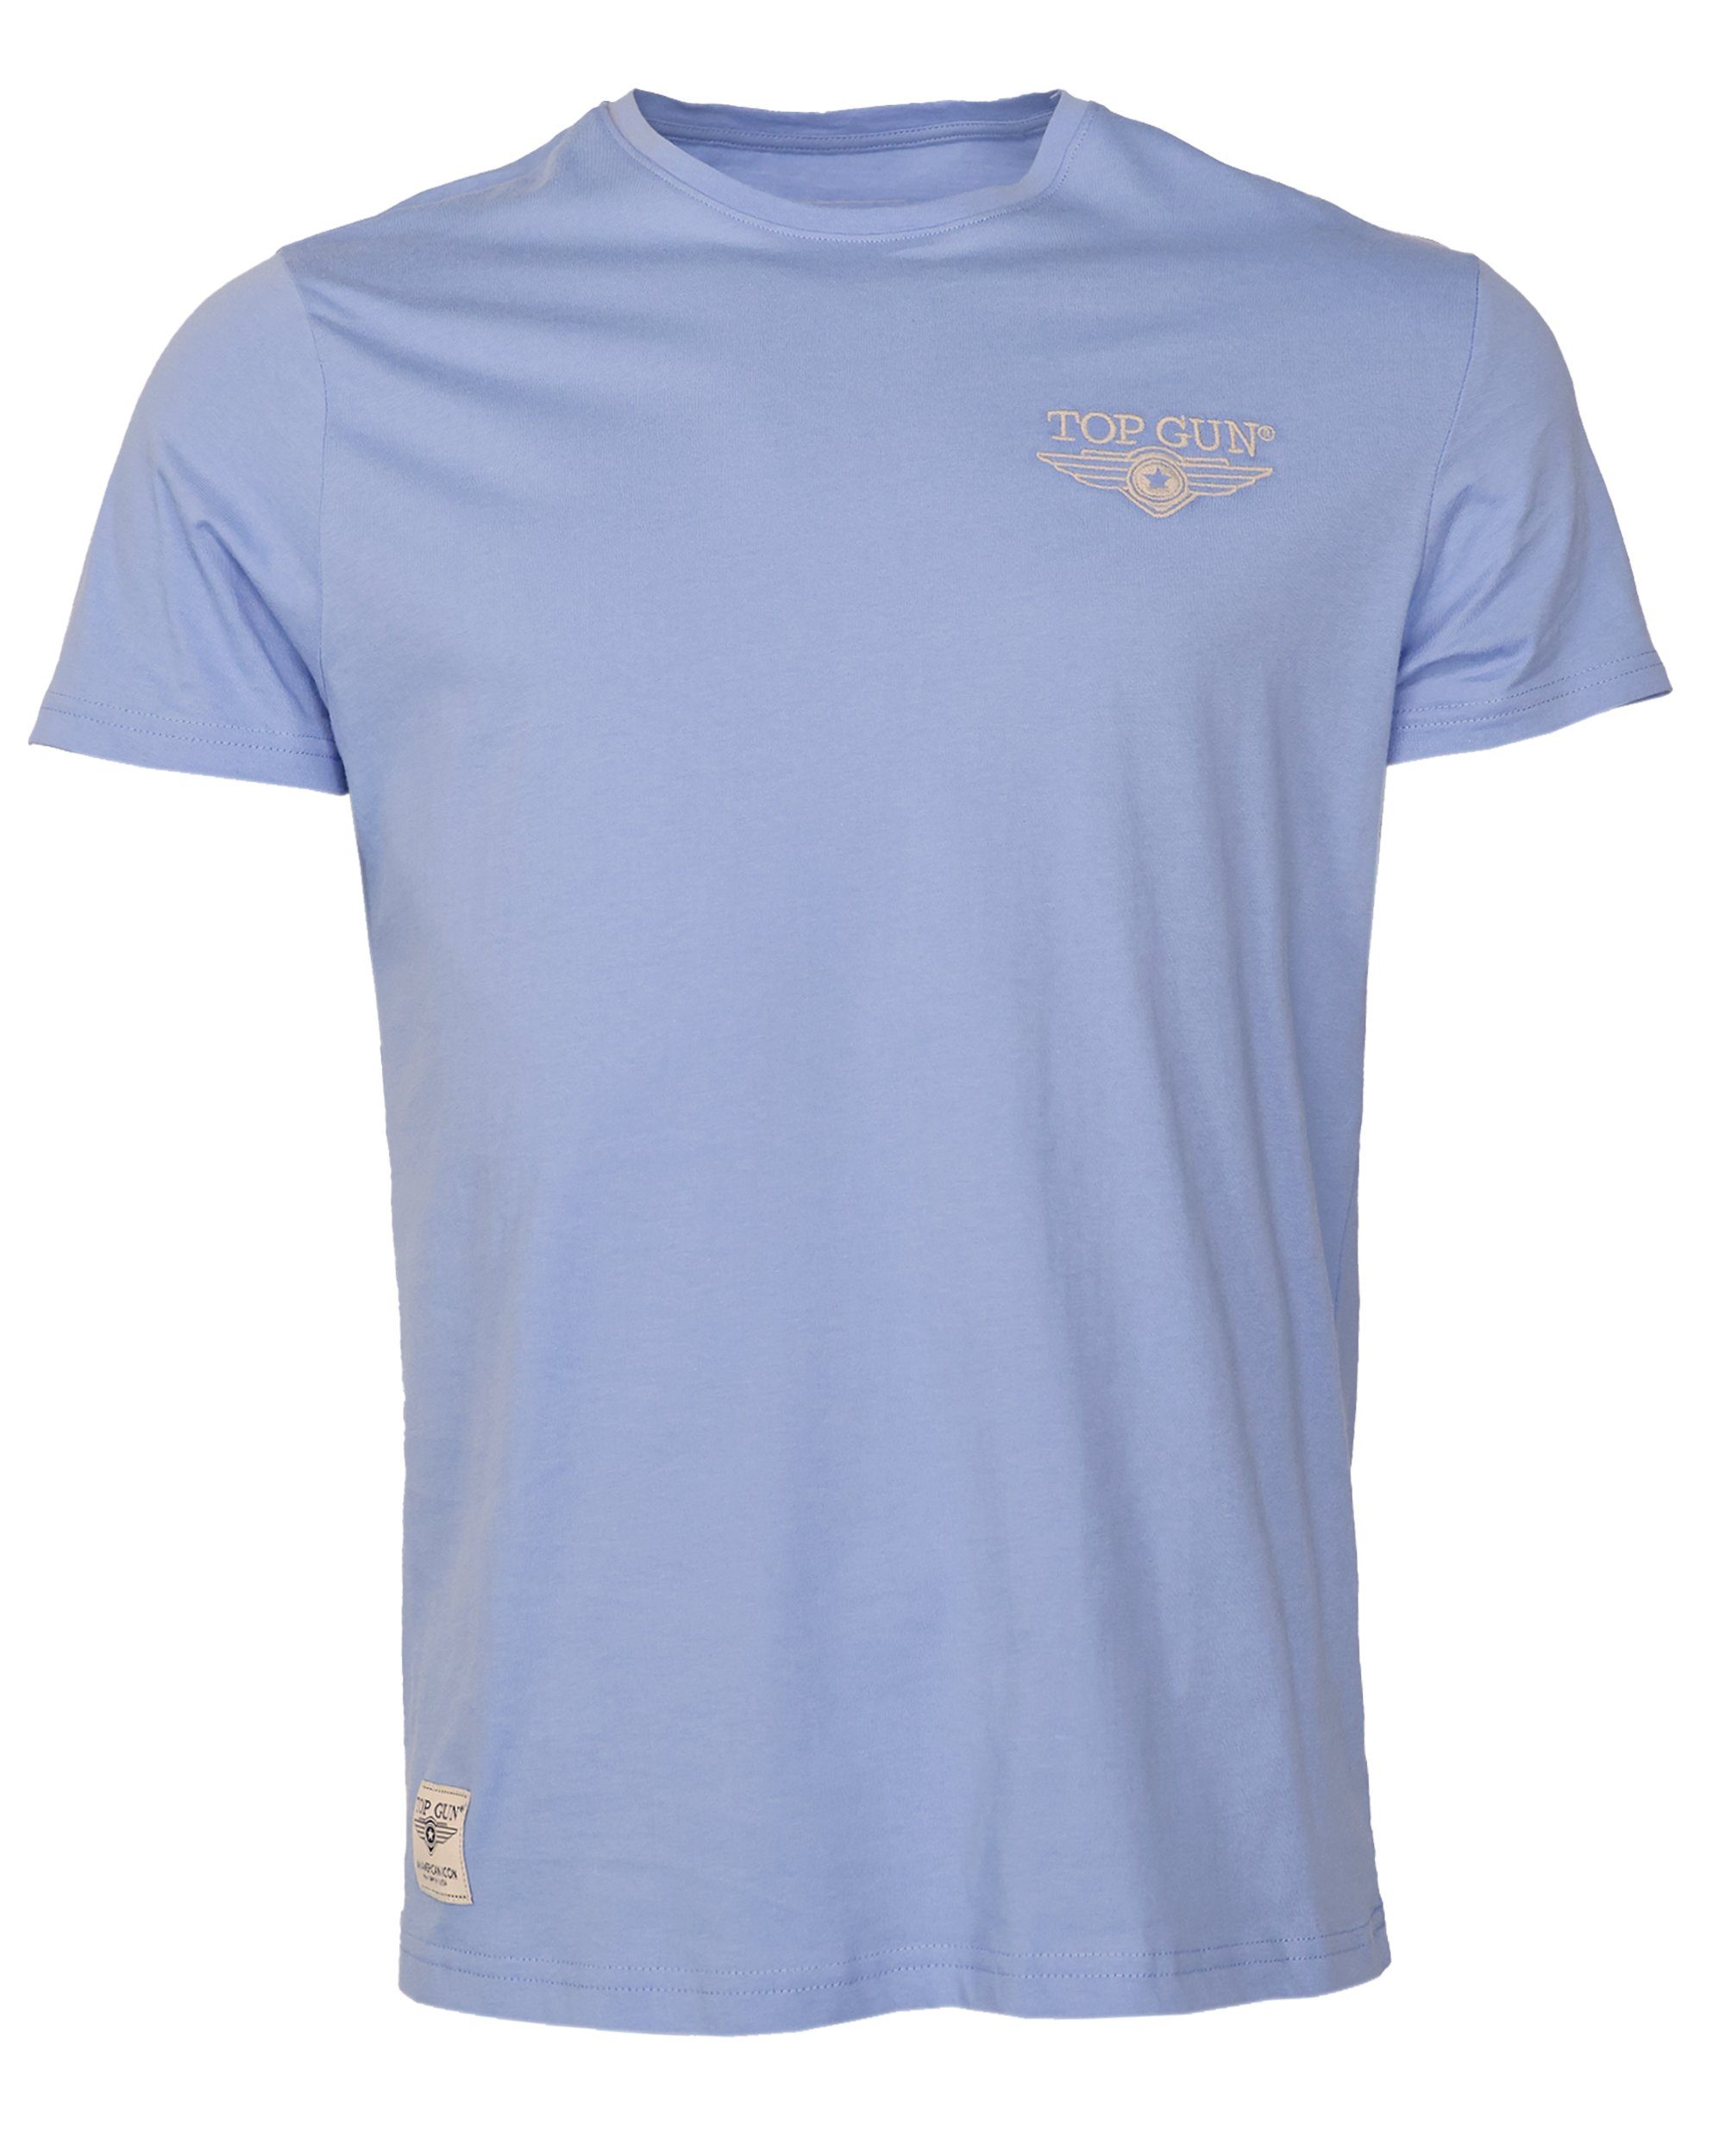 TOP GUN T-Shirt TG20213036 light blue